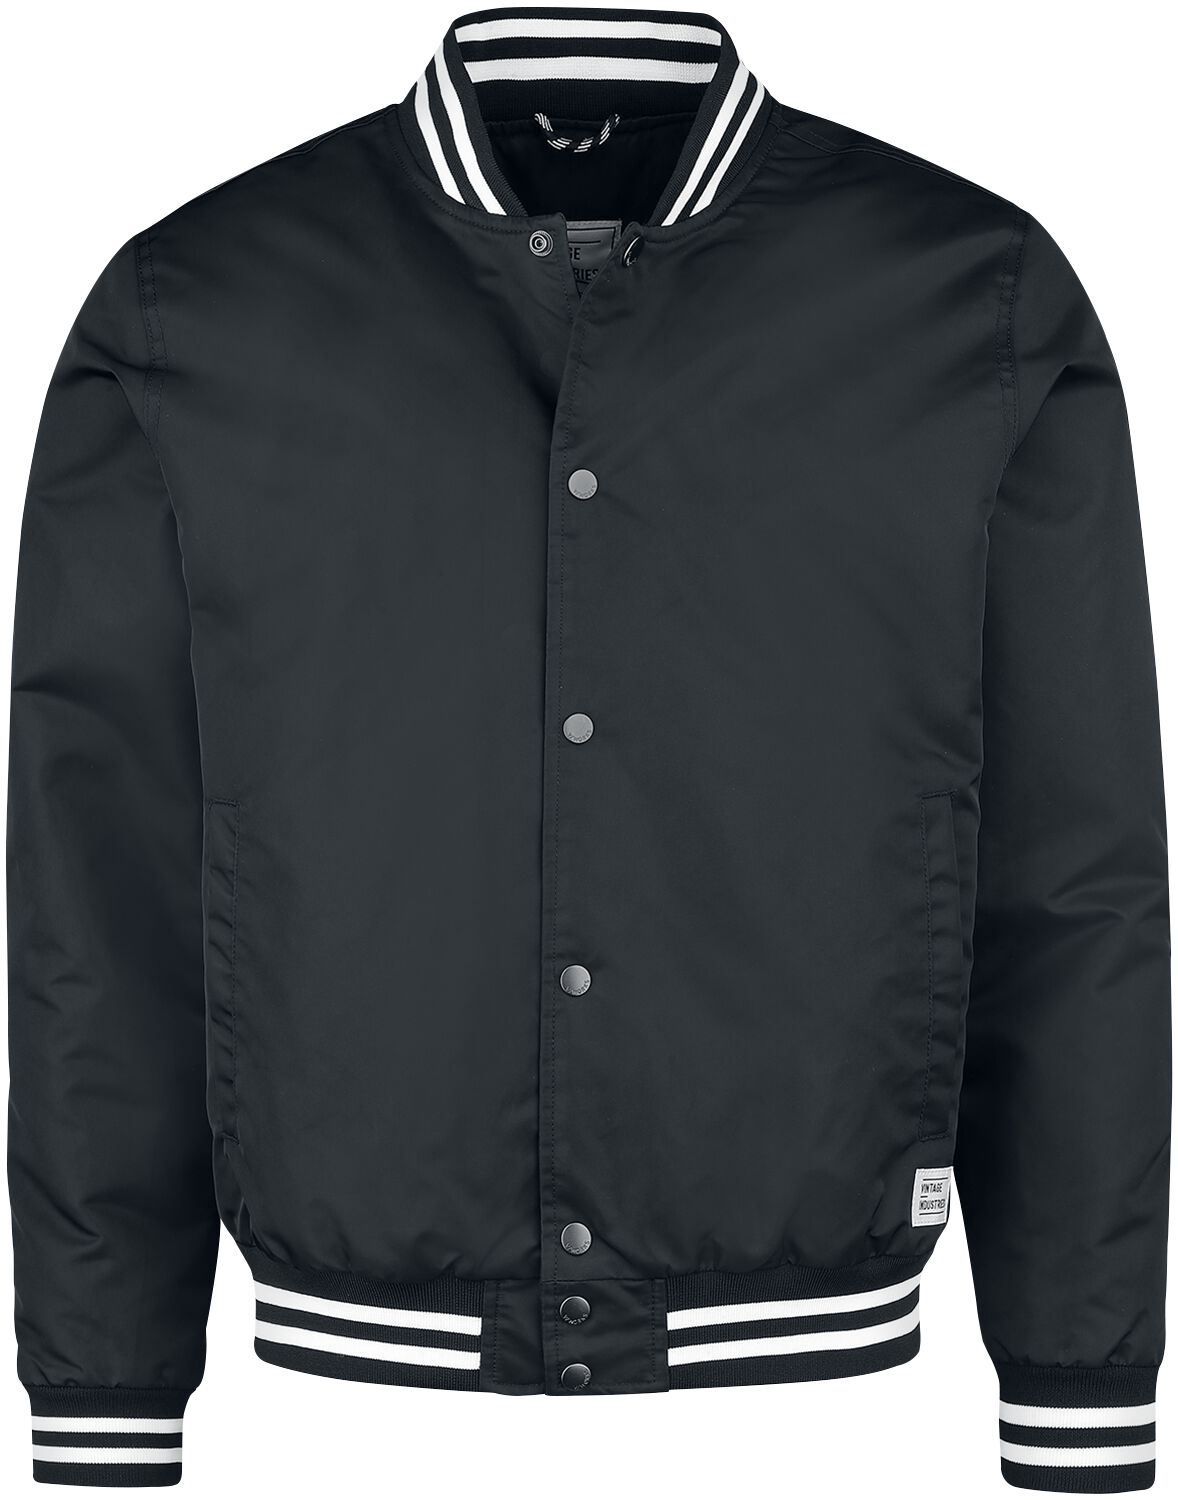 Vintage Industries Übergangsjacke - Chapman Jacket - M bis XXL - für Männer - Größe XL - schwarz